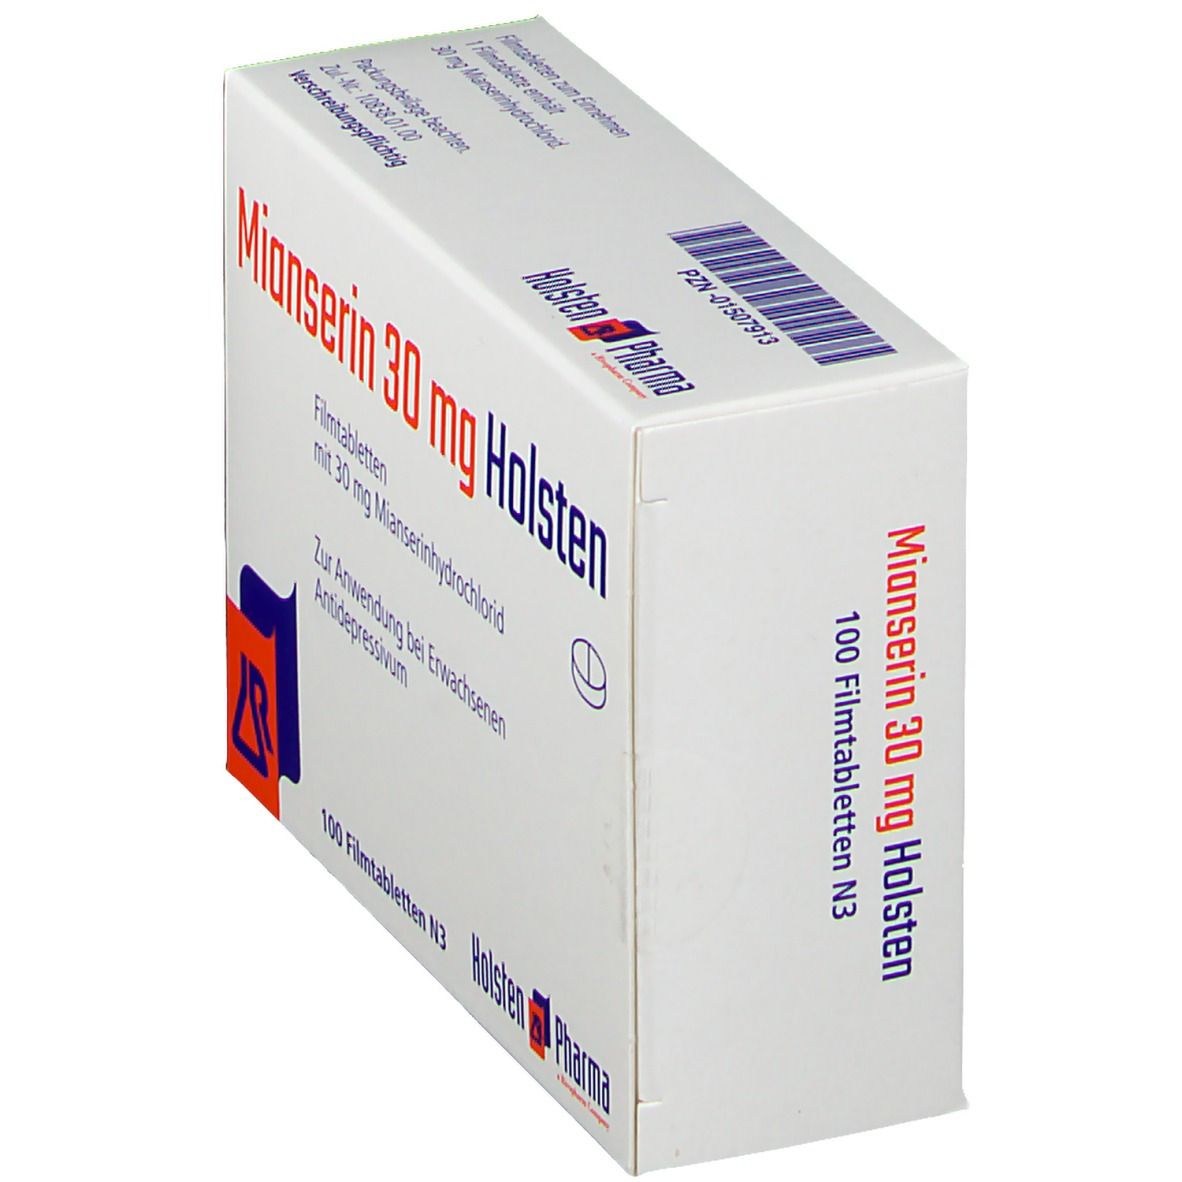 Mianserin 30 mg Holsten